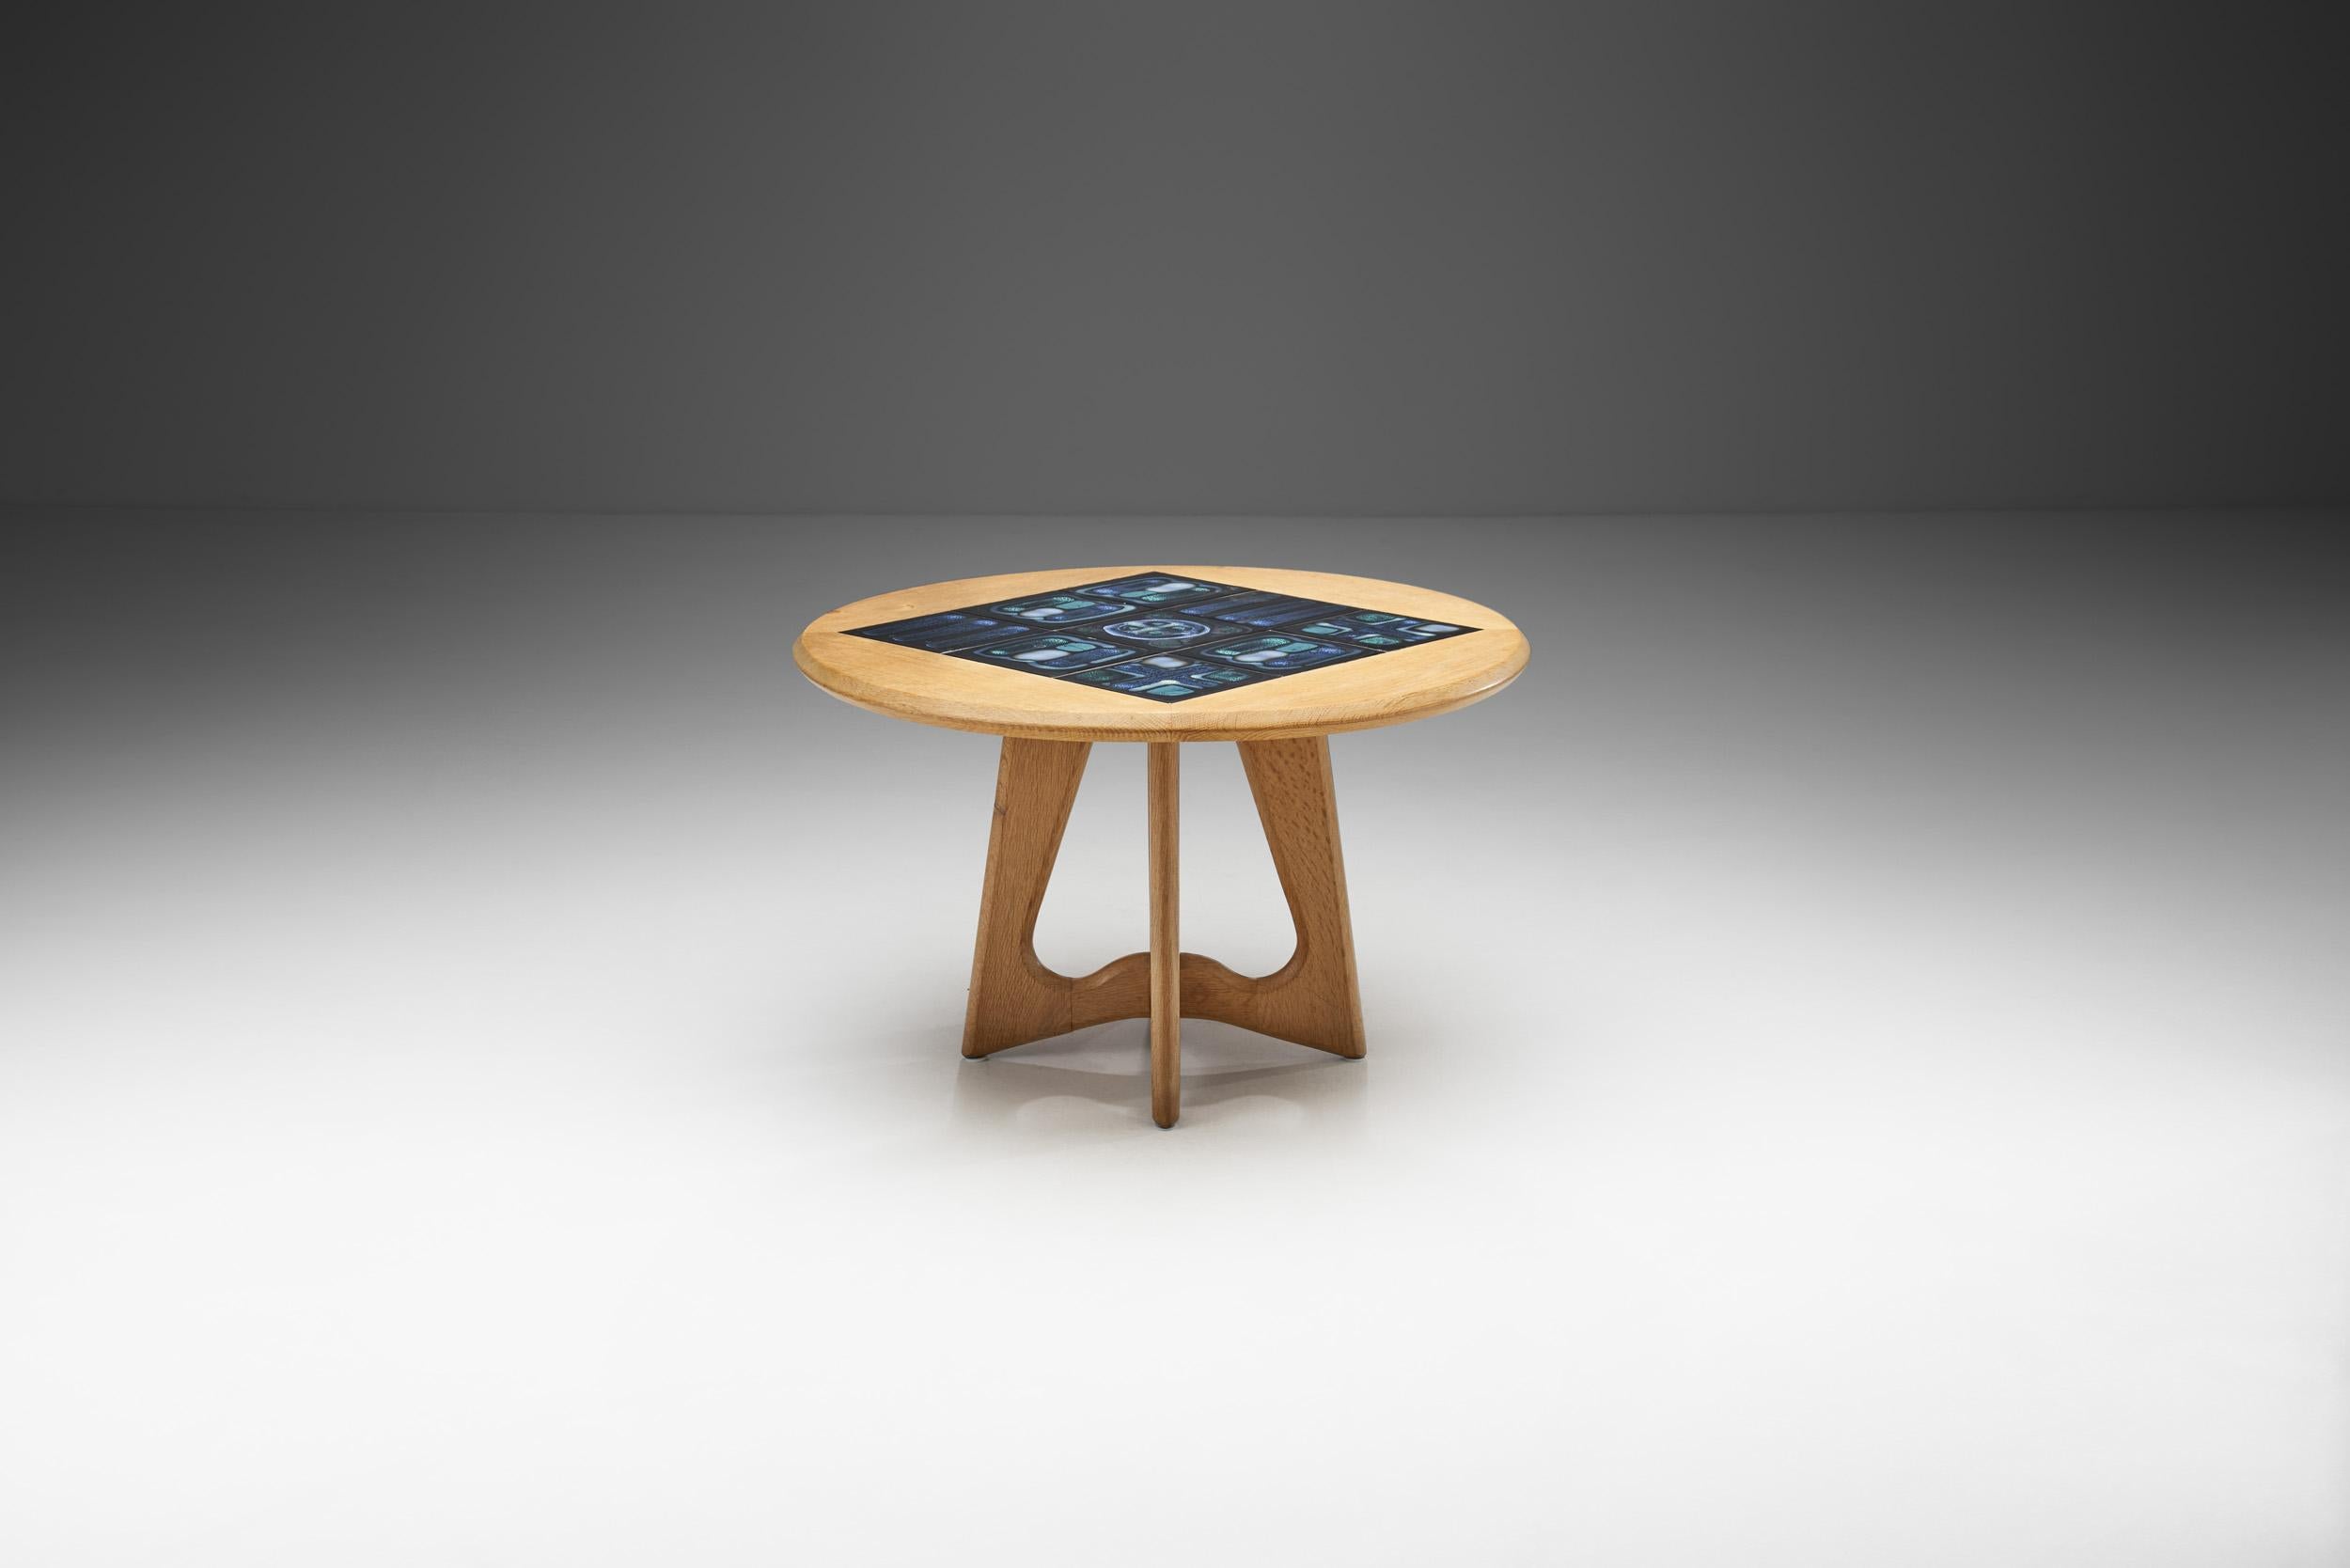 Cette brillante table basse avec faïence conçue par le céramiste de renommée mondiale Boleslav Danikovski, est une pièce qui se caractérise par le génie du design de Robert Guillerme et Jacques Chambron. Il représente visuellement la raison même